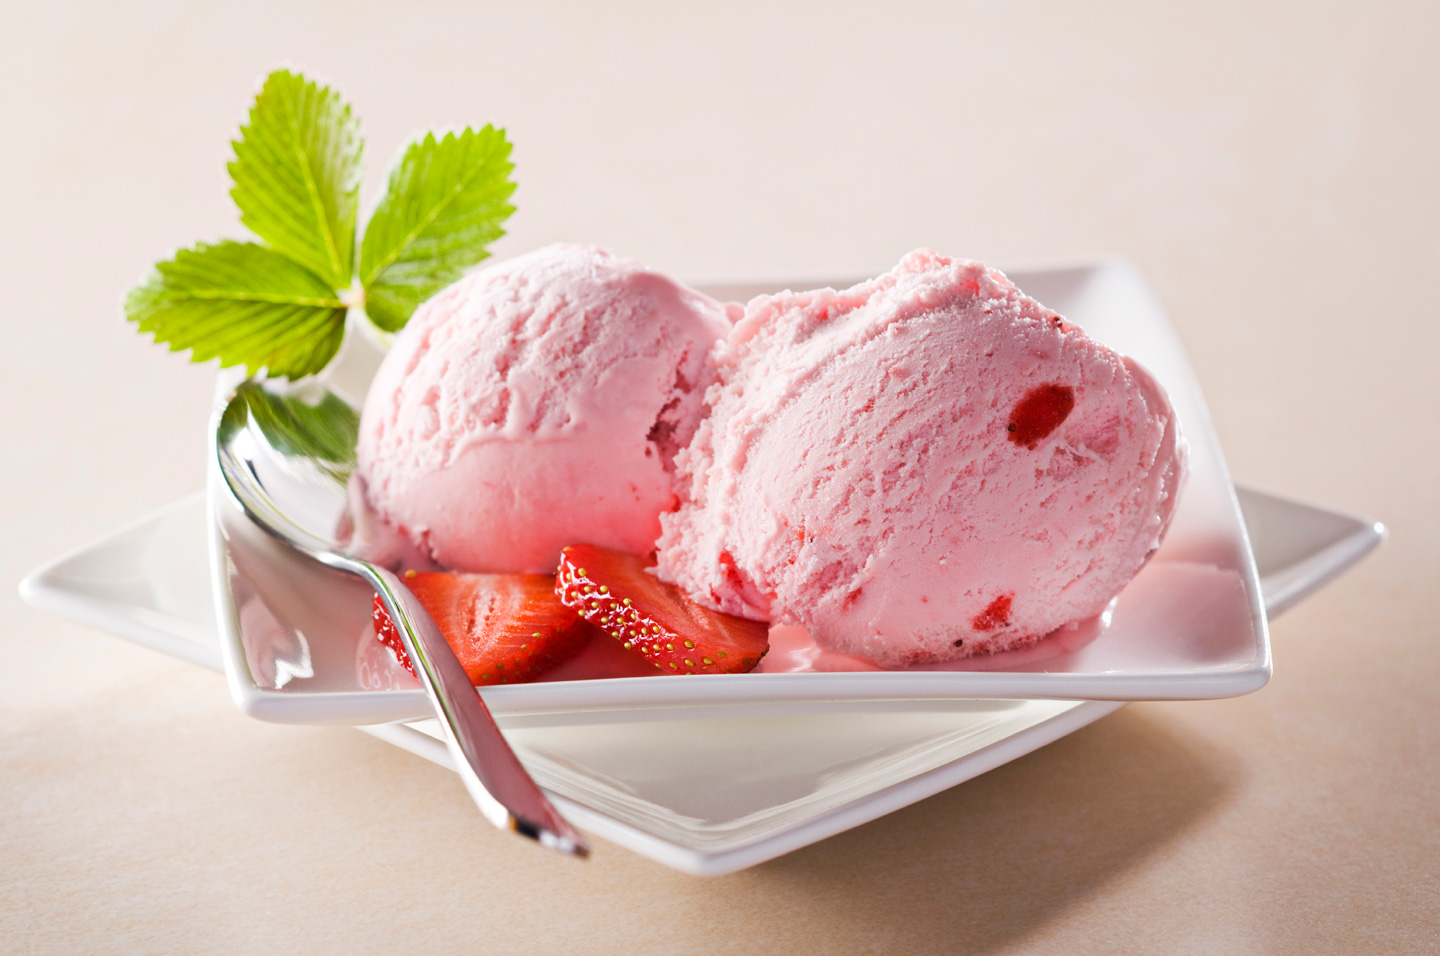 بستنی، بهترین پیشنهاد در ایام گرم سال نیست/ آشنایی با حقایقی در مورد بستنی